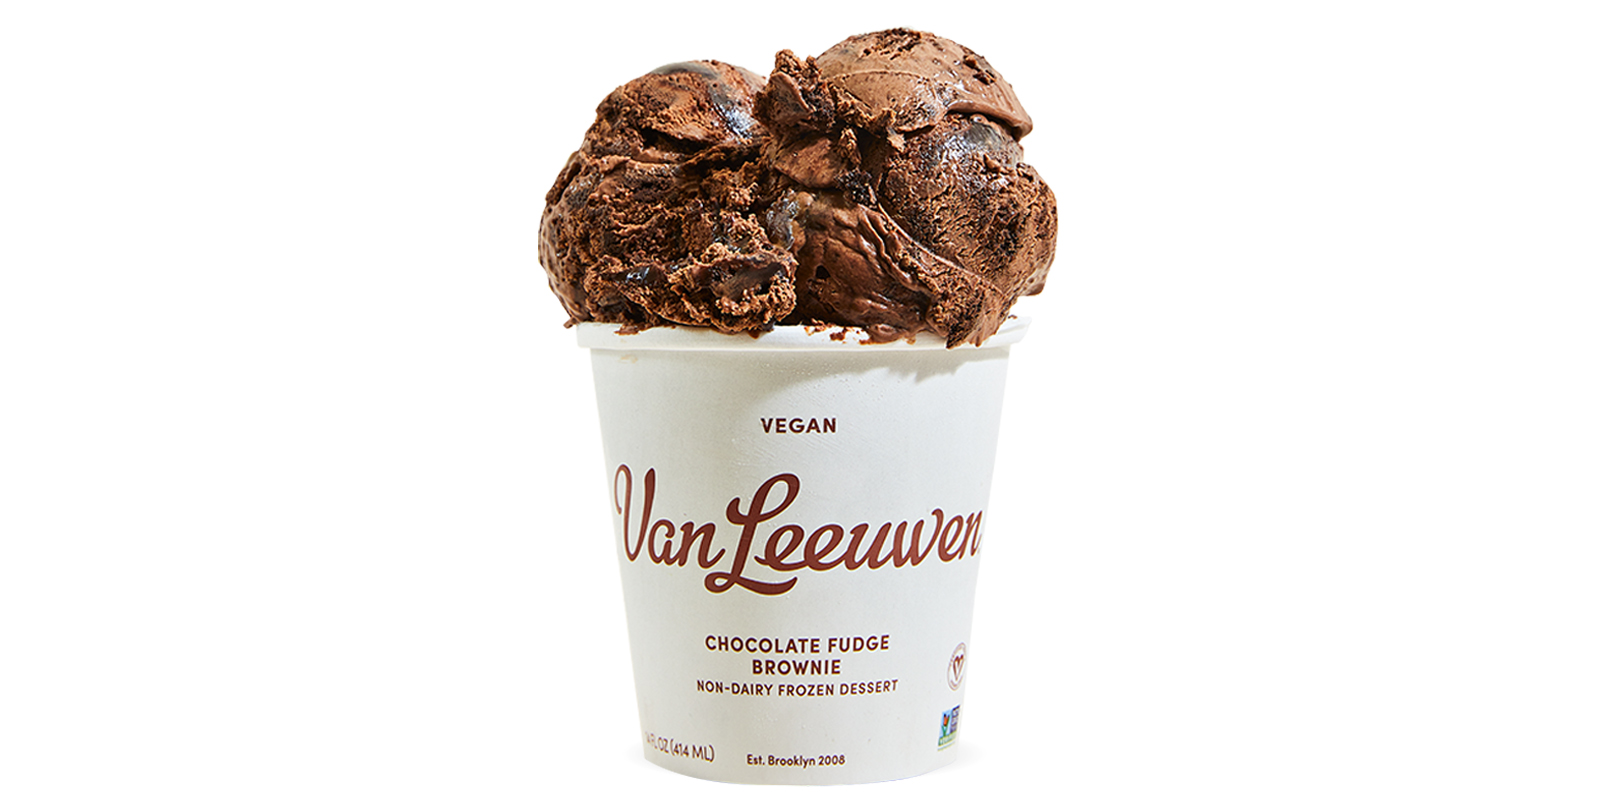 Order Vegan Chocolate Fudge Brownie food online from Van Leeuwen Ice Cream store, Houston on bringmethat.com